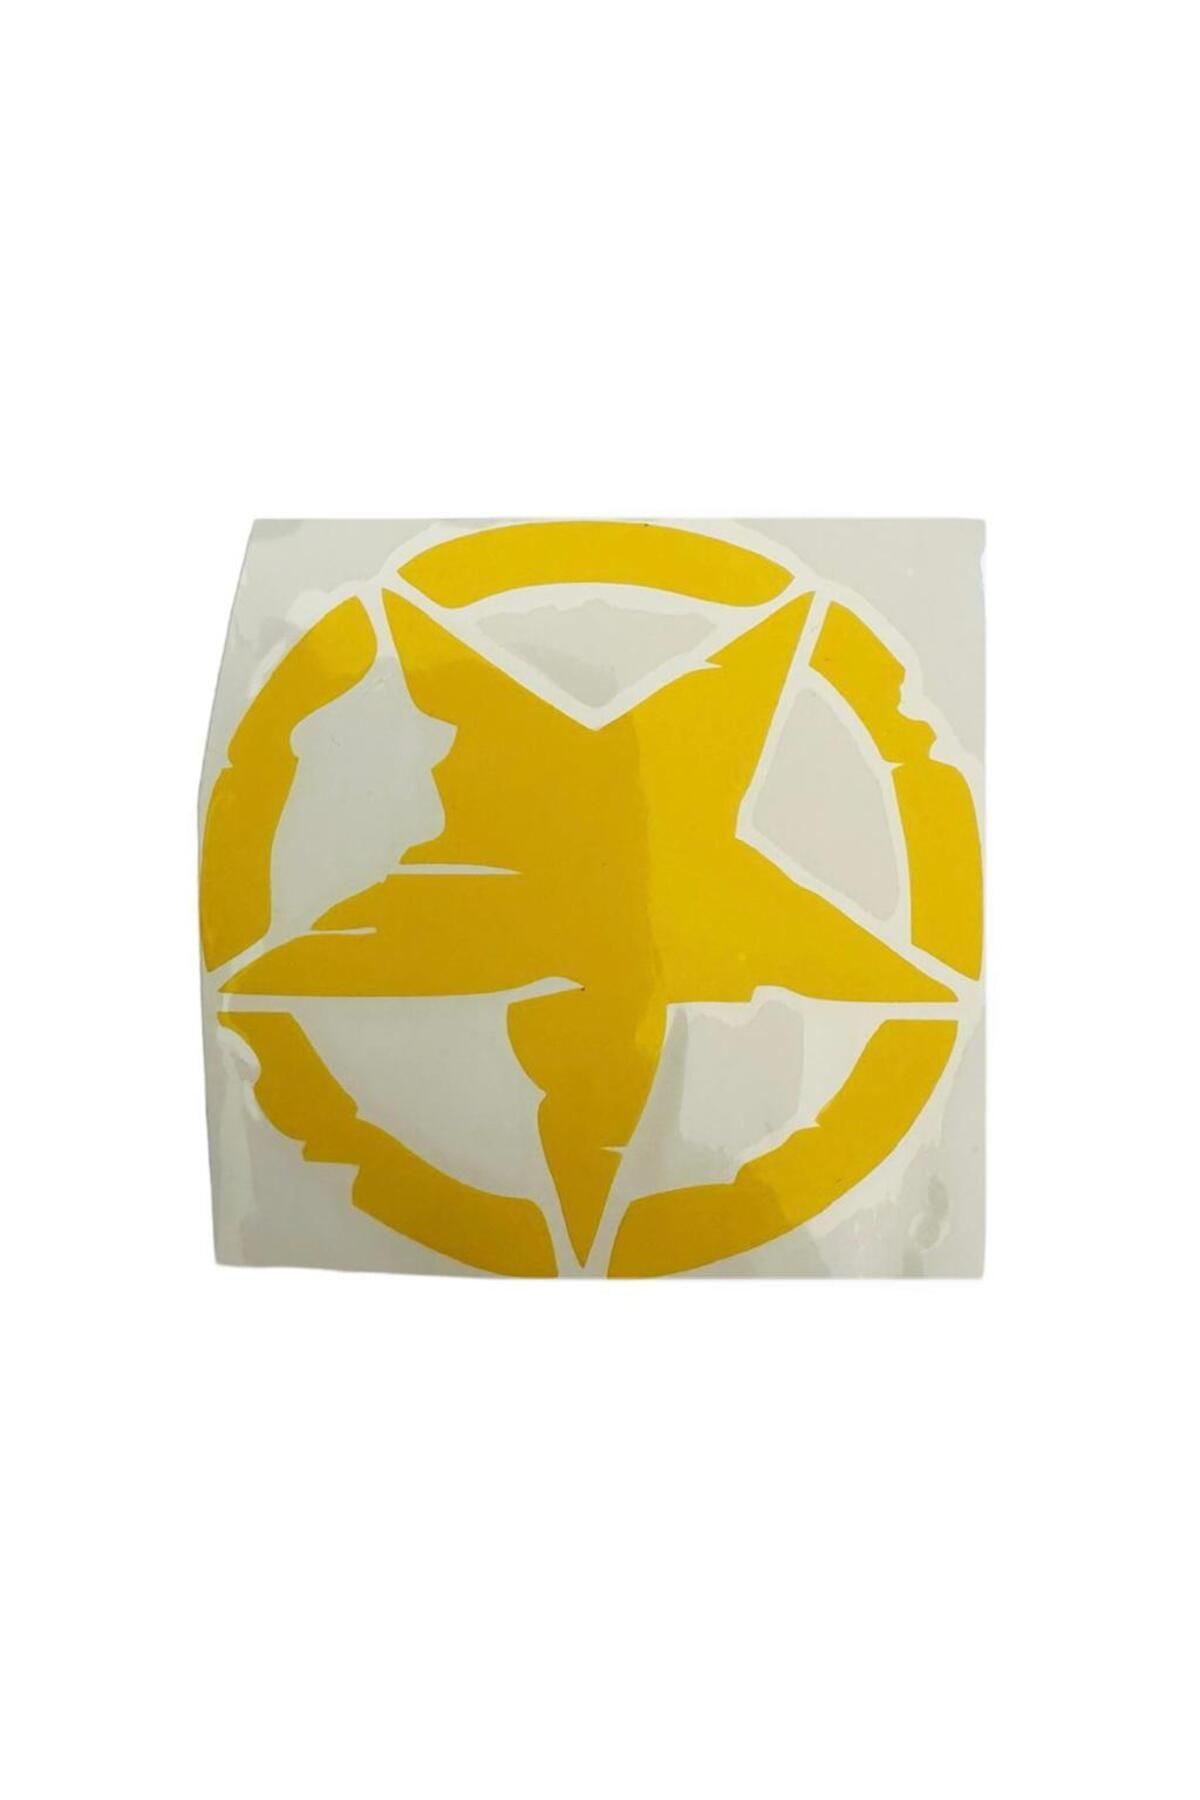 Gogo Yıldız Desenli Sarı Sticker 75 x 75 mm